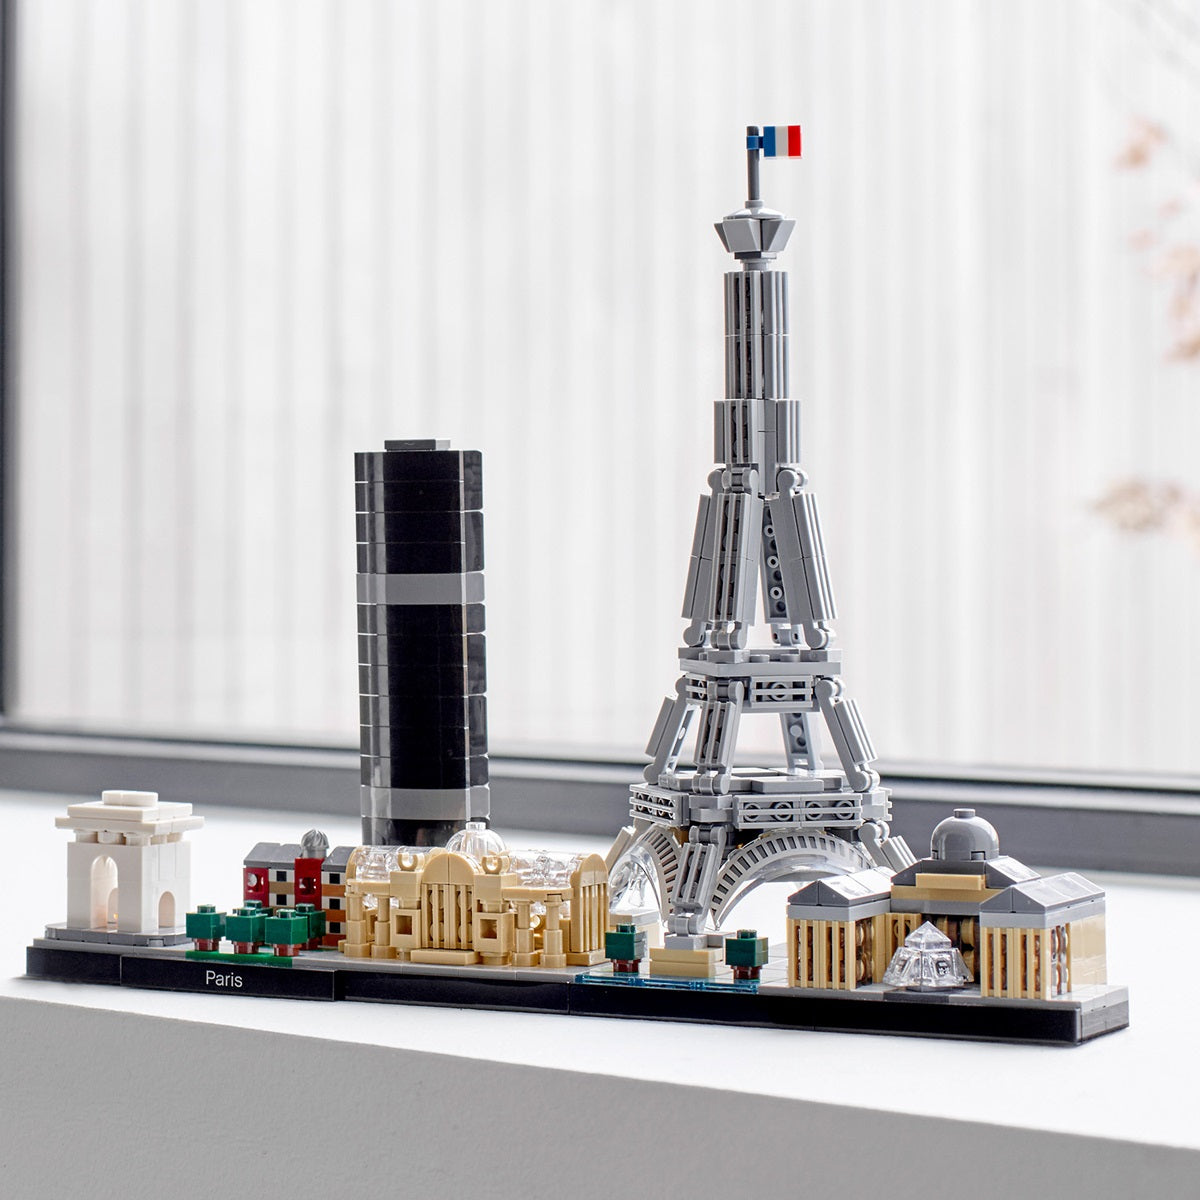 LEGO Architecture Paris Skyline Building Set 21044